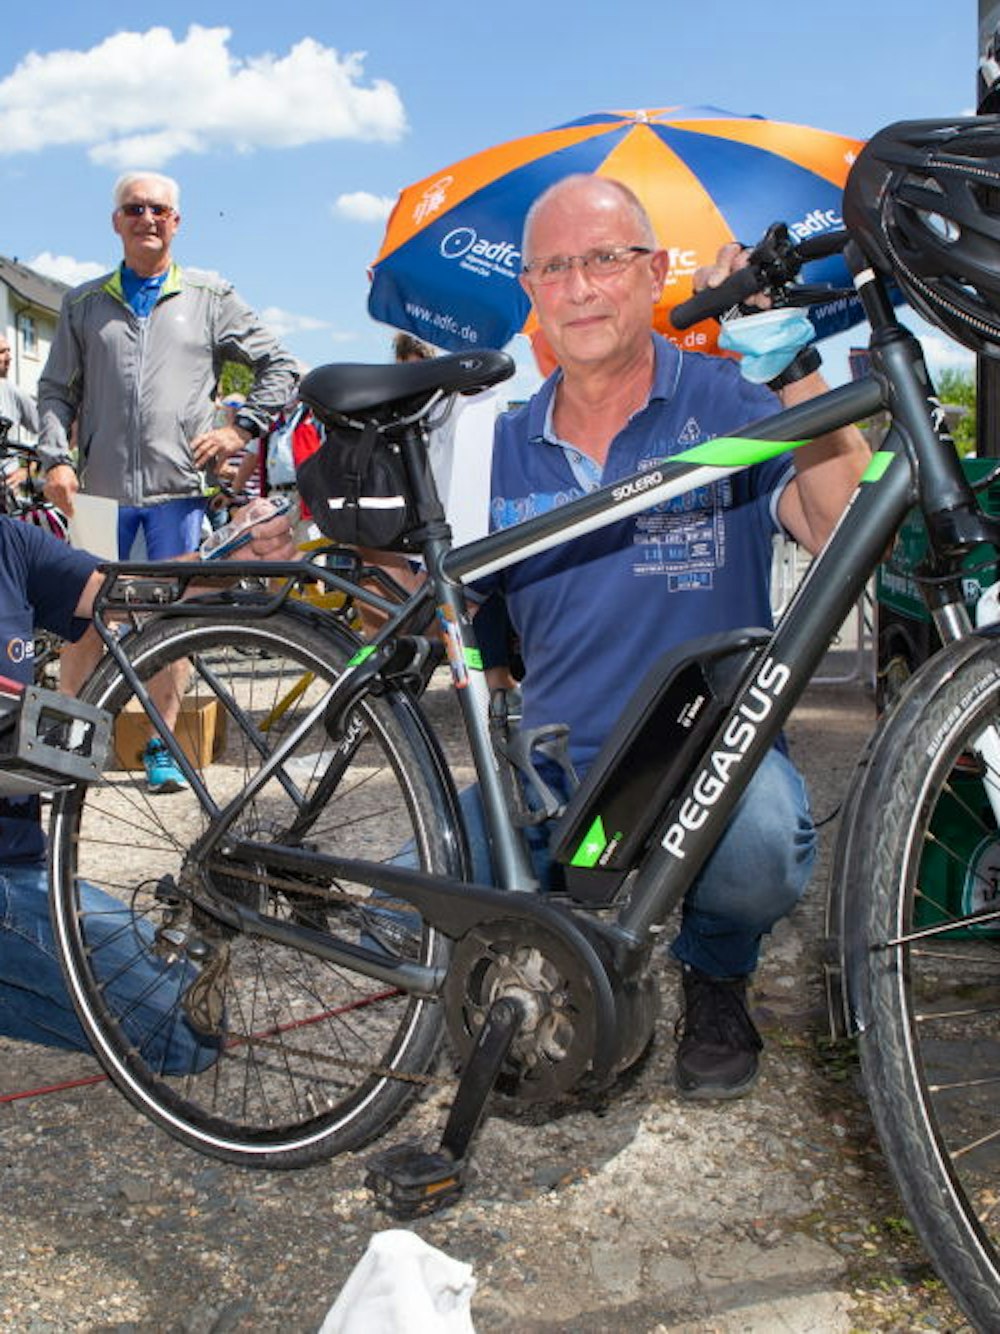 ADFC-Vorsitzender Bernhard Werheid (u.l.) zeigt den Nagelpräger, mit dem er das E-Bike von Gerd Hilchenbach gleich codiert.